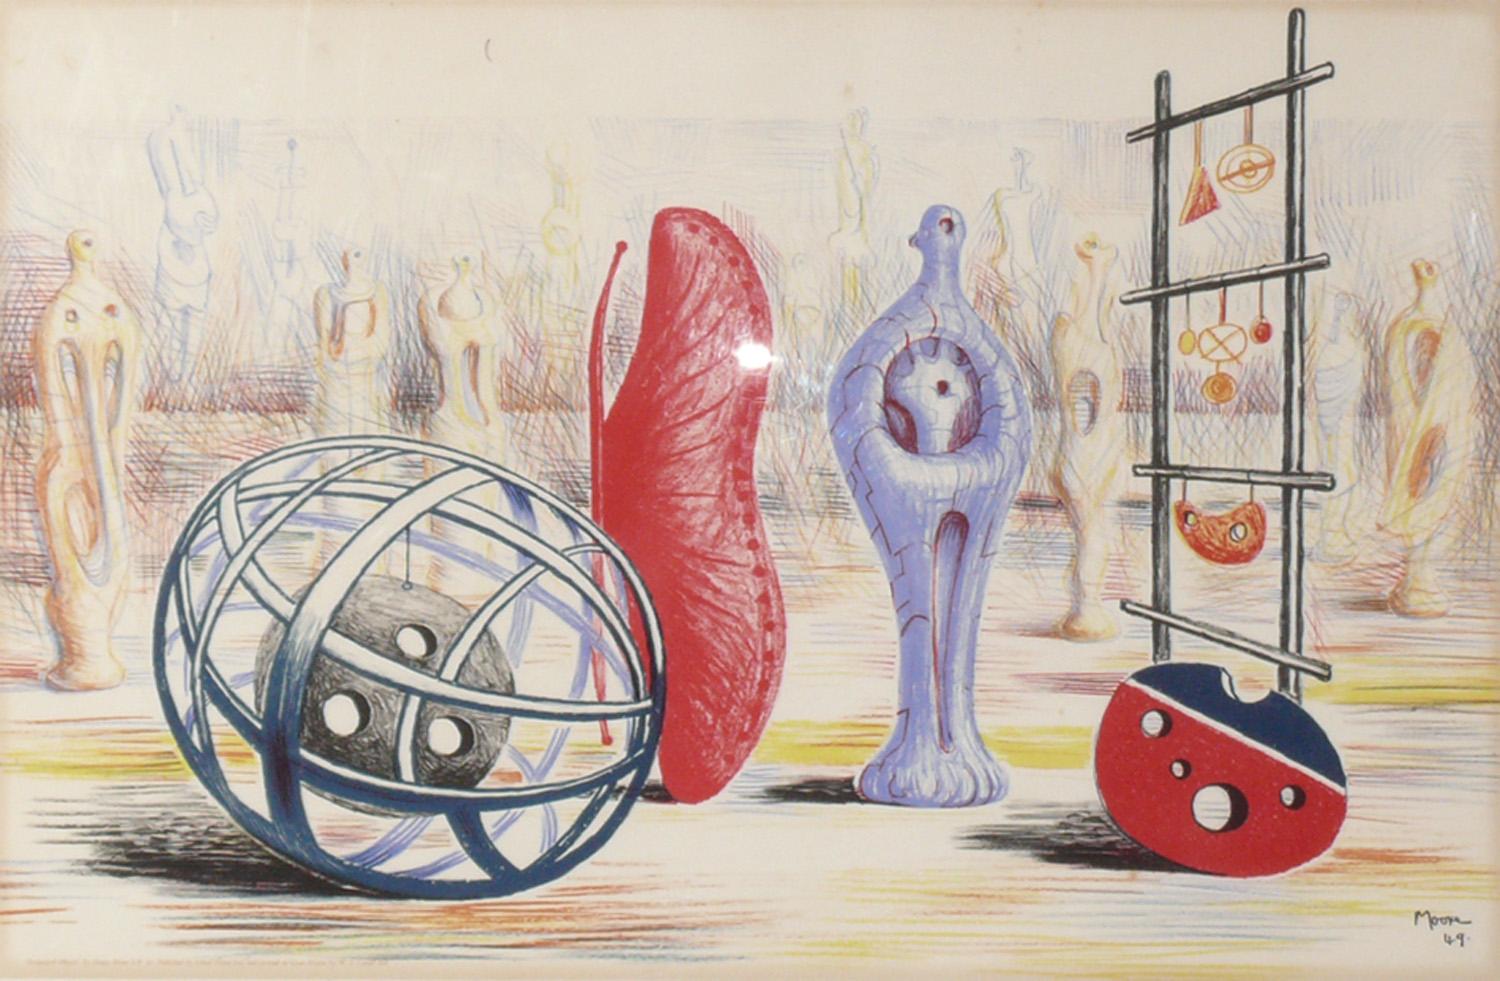 Henry Moore Lithographie mit dem Titel Sculptural Objects, ca. 1949. Kürzlich professionell gerahmt unter UV-beständigem Glas. Gedruckte Signatur, Titel und Datum am unteren Rand 